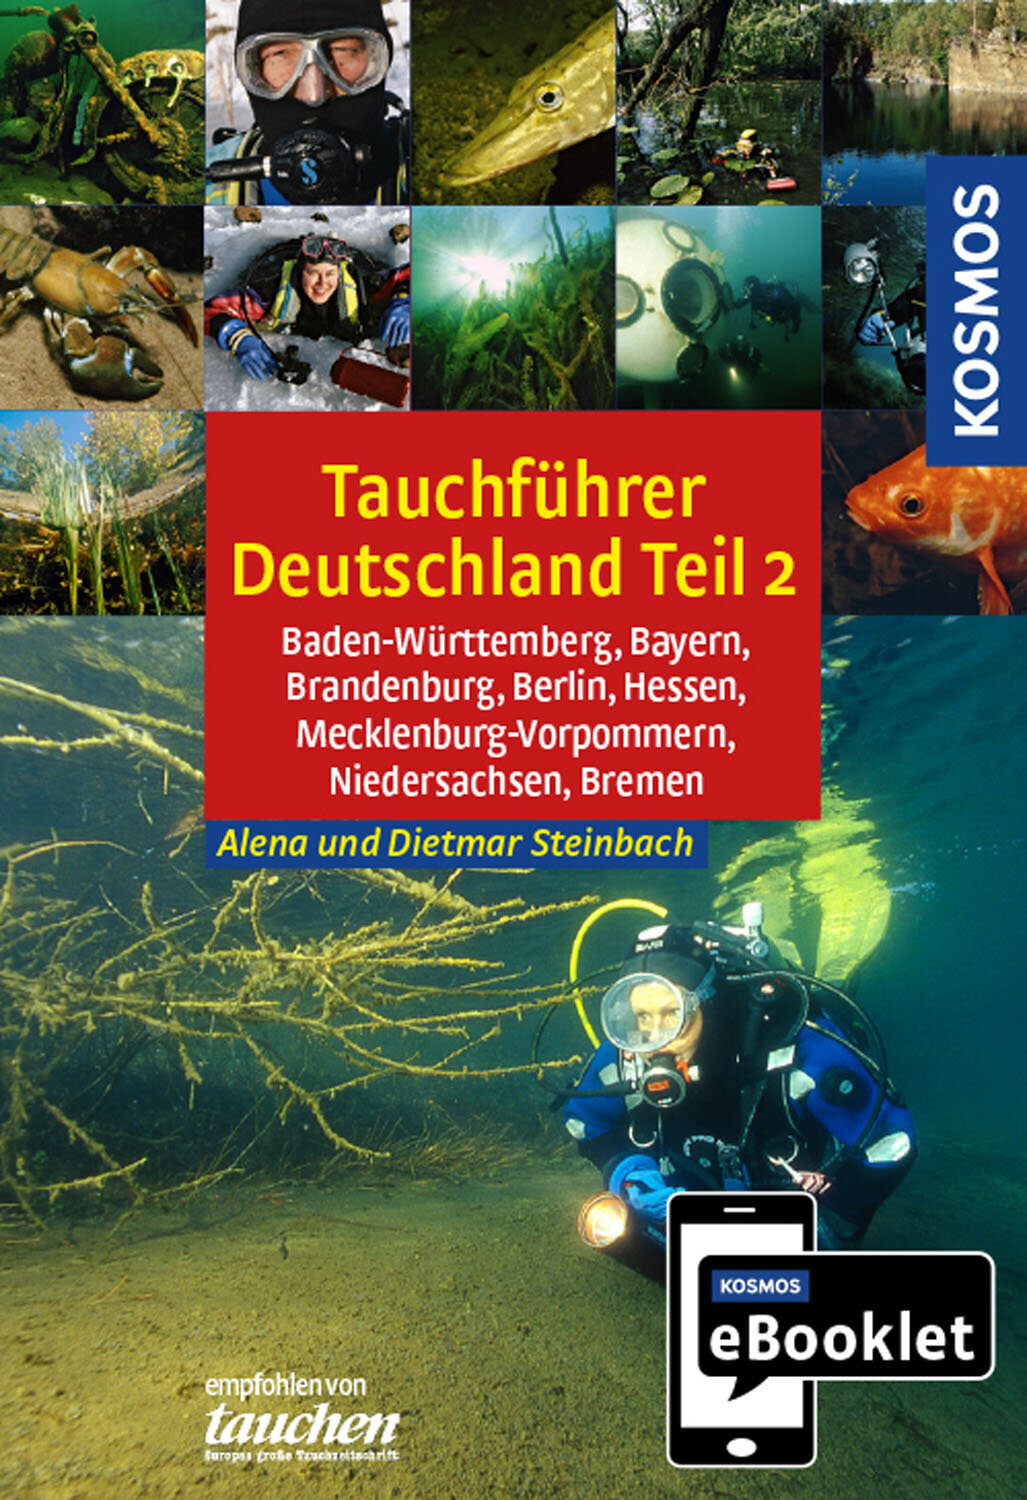 KOSMOS eBooklet: Tauchreiseführer Baden-Württemberg  Bayern  Brandenburg  Berlin  Hessen  Mecklenburg-Vorpommern  Niedersachsen  Bremen